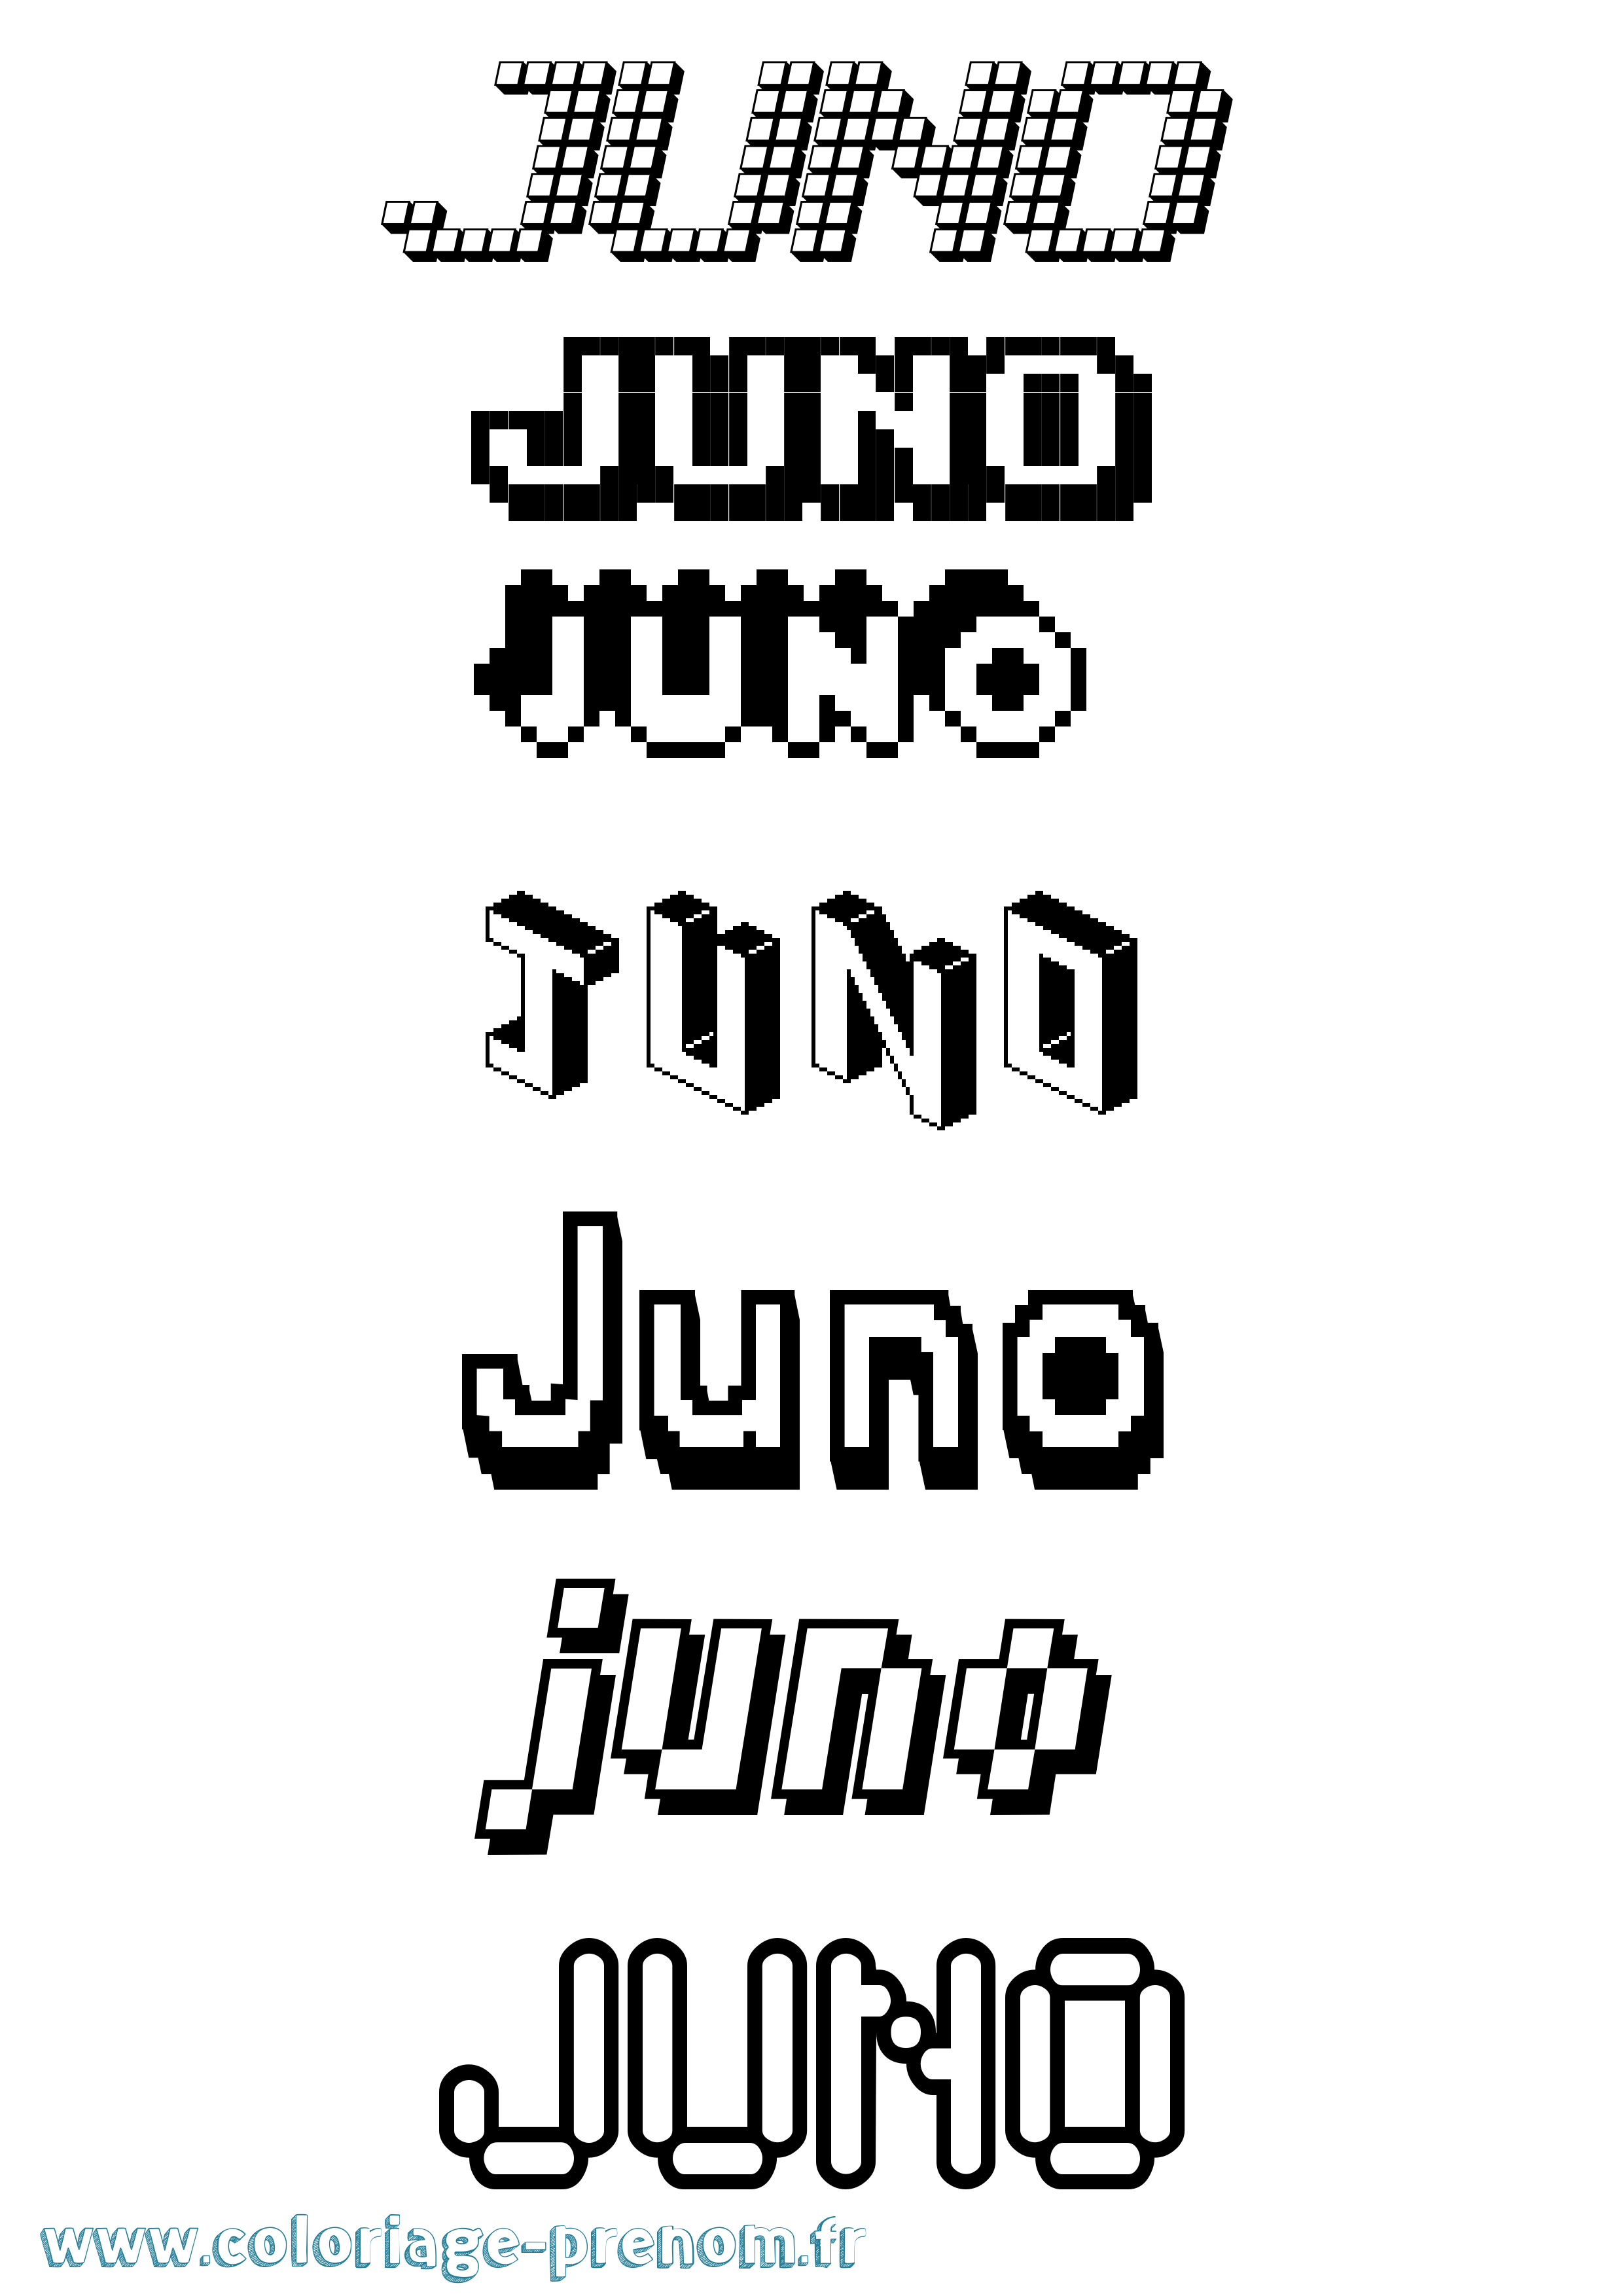 Coloriage prénom Juno Pixel